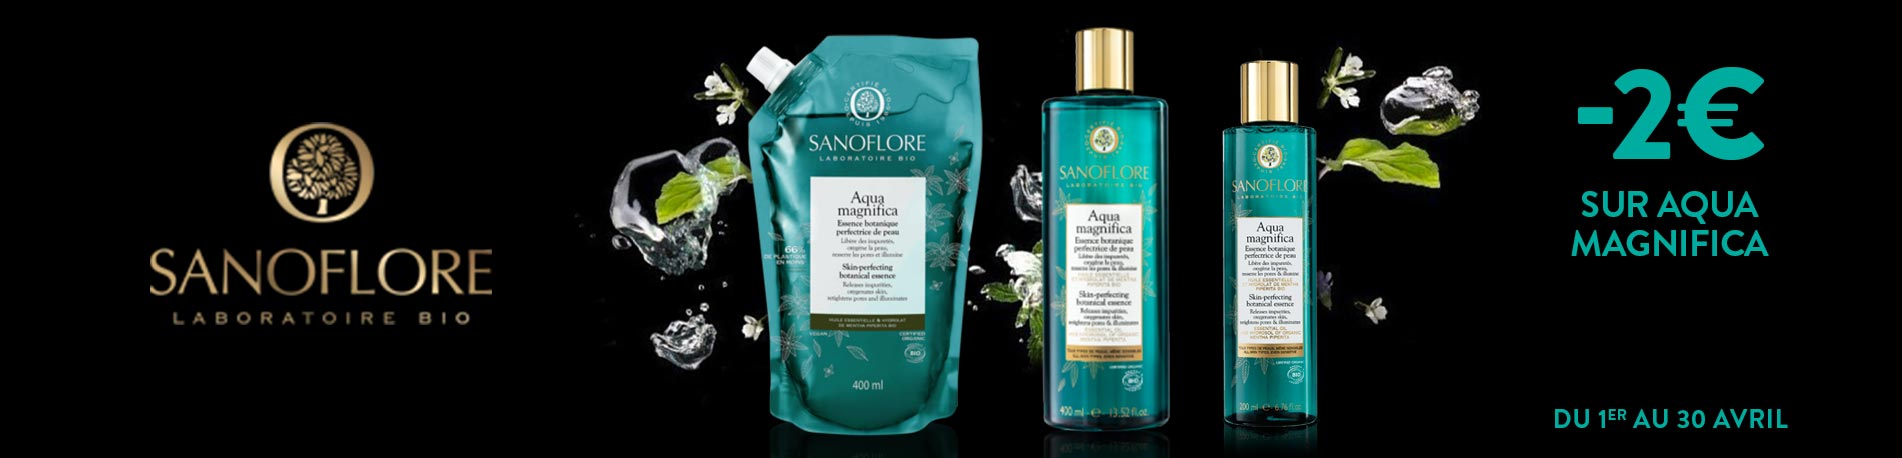 Promotion Sanoflore Aqua Magnifica